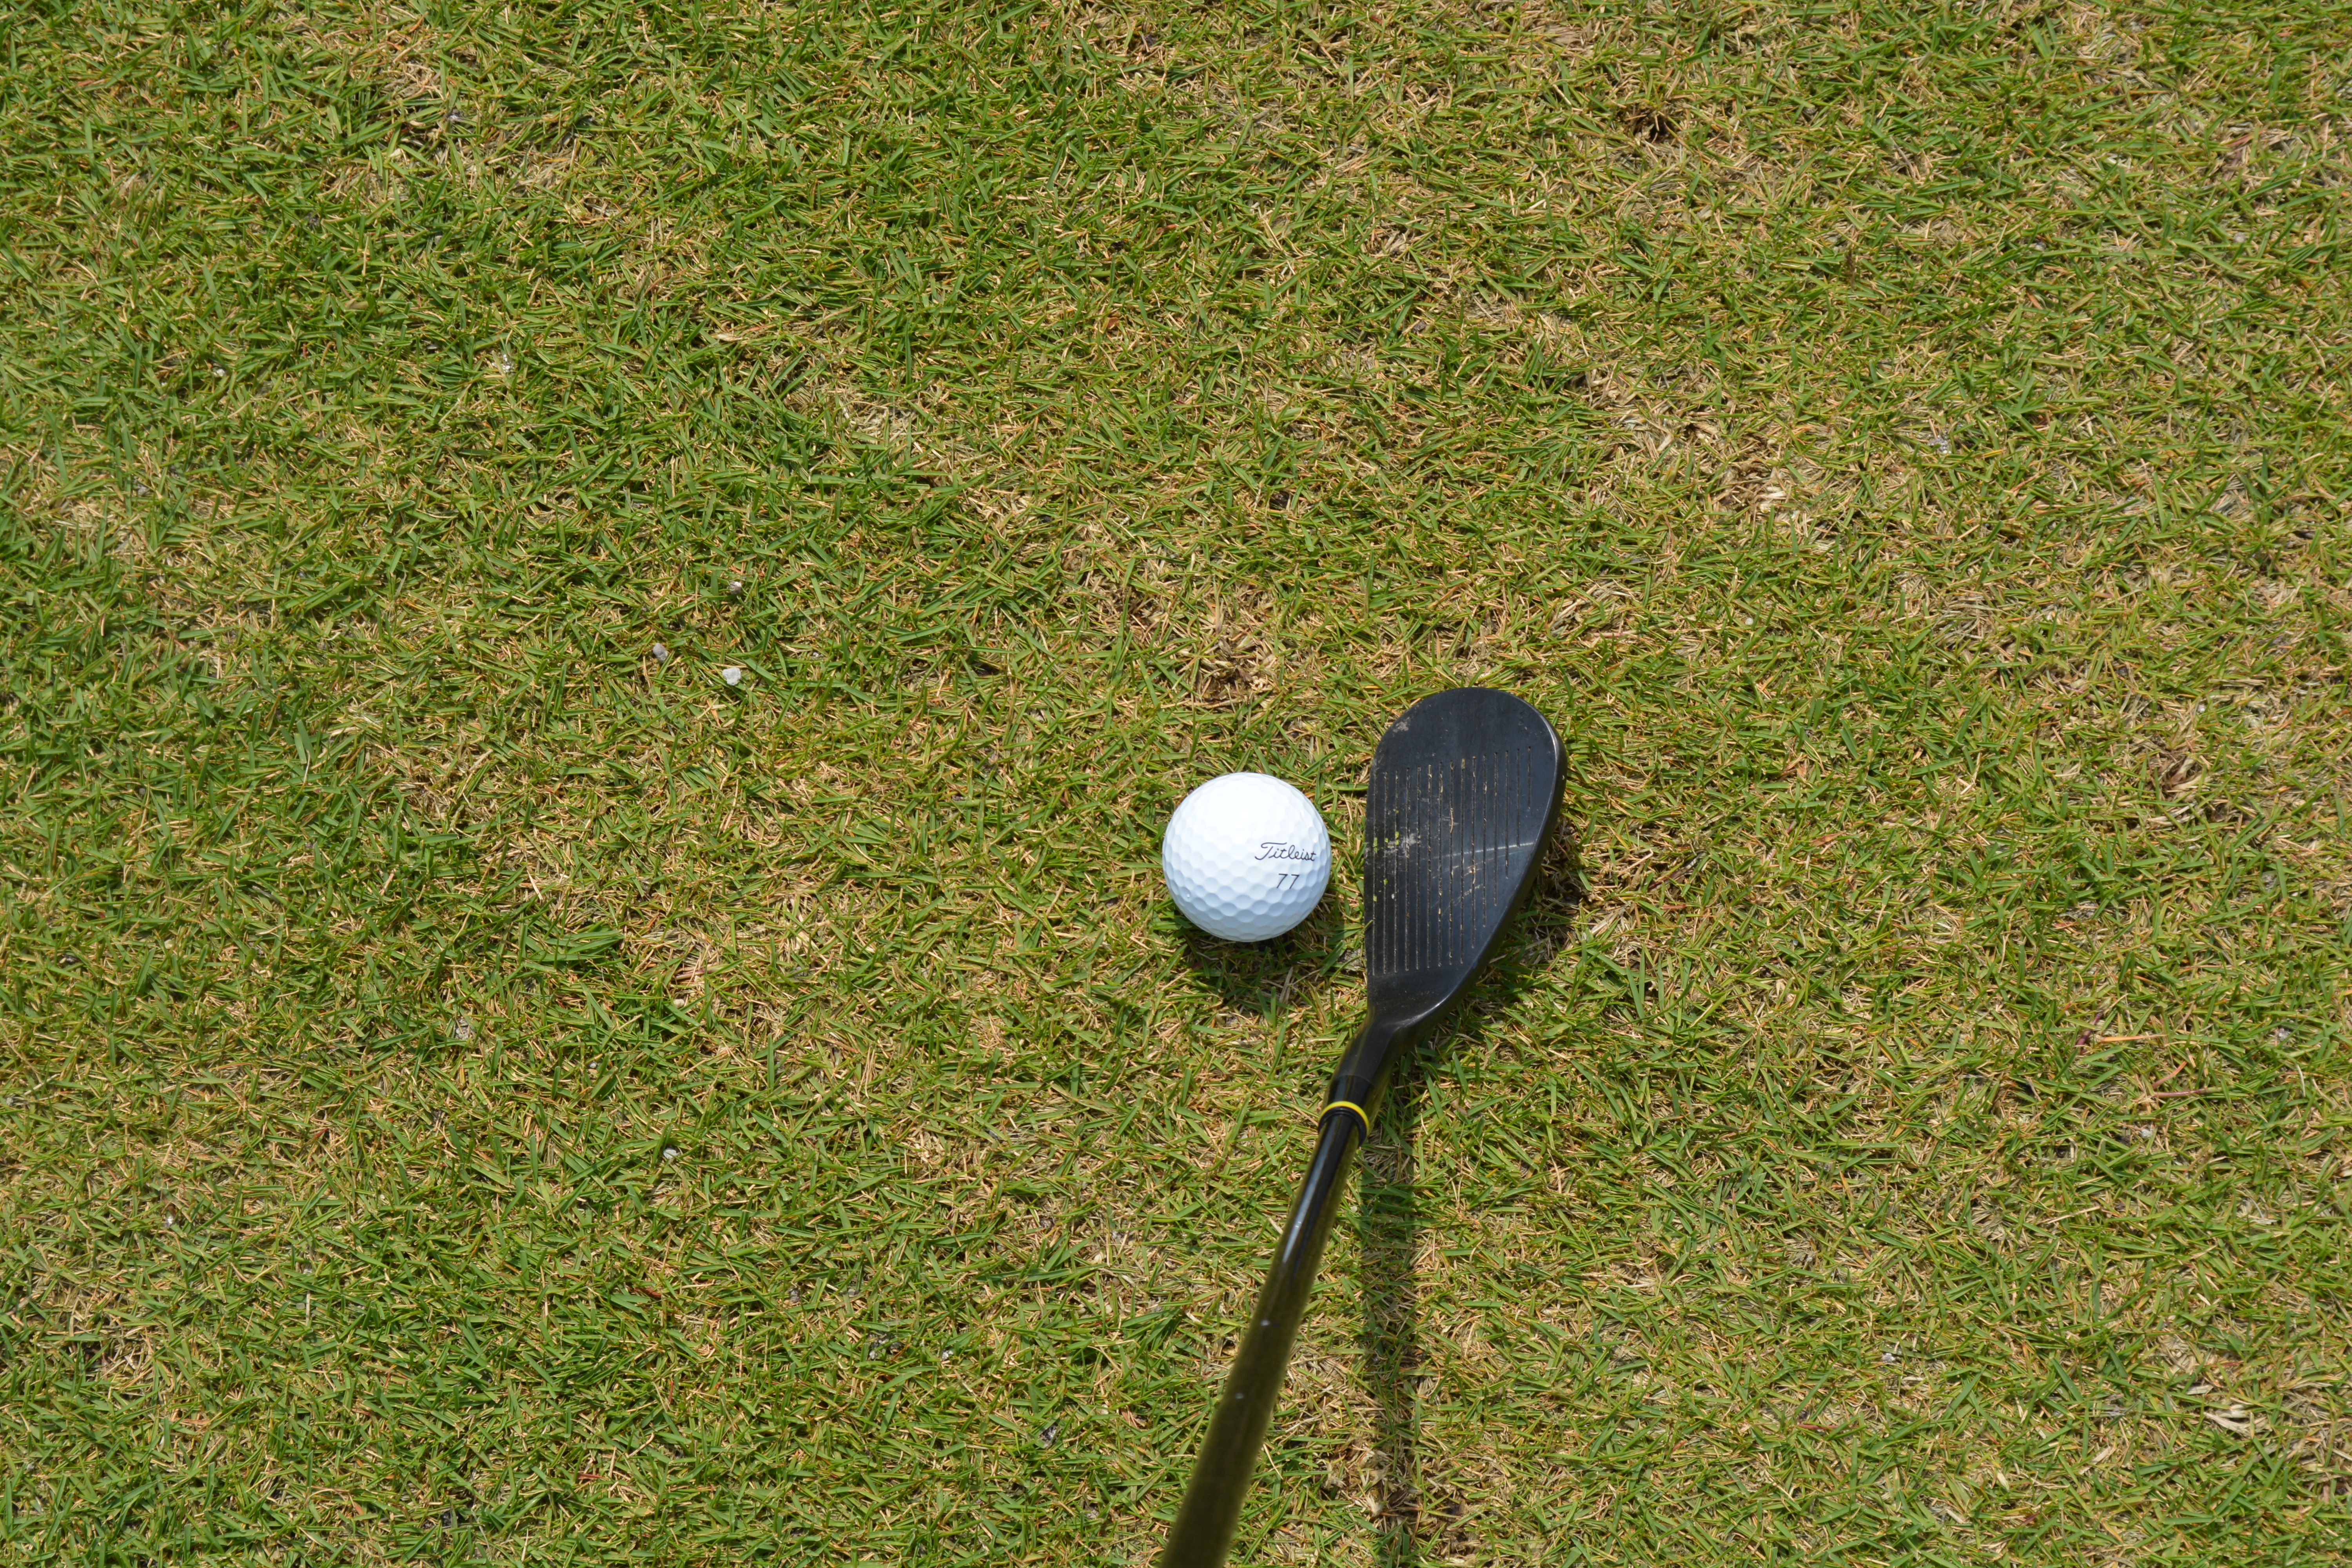 ゴルフクラブ別に飛距離を比較 スコアを上げる練習方法を知ろう Live出版オンライン Extry